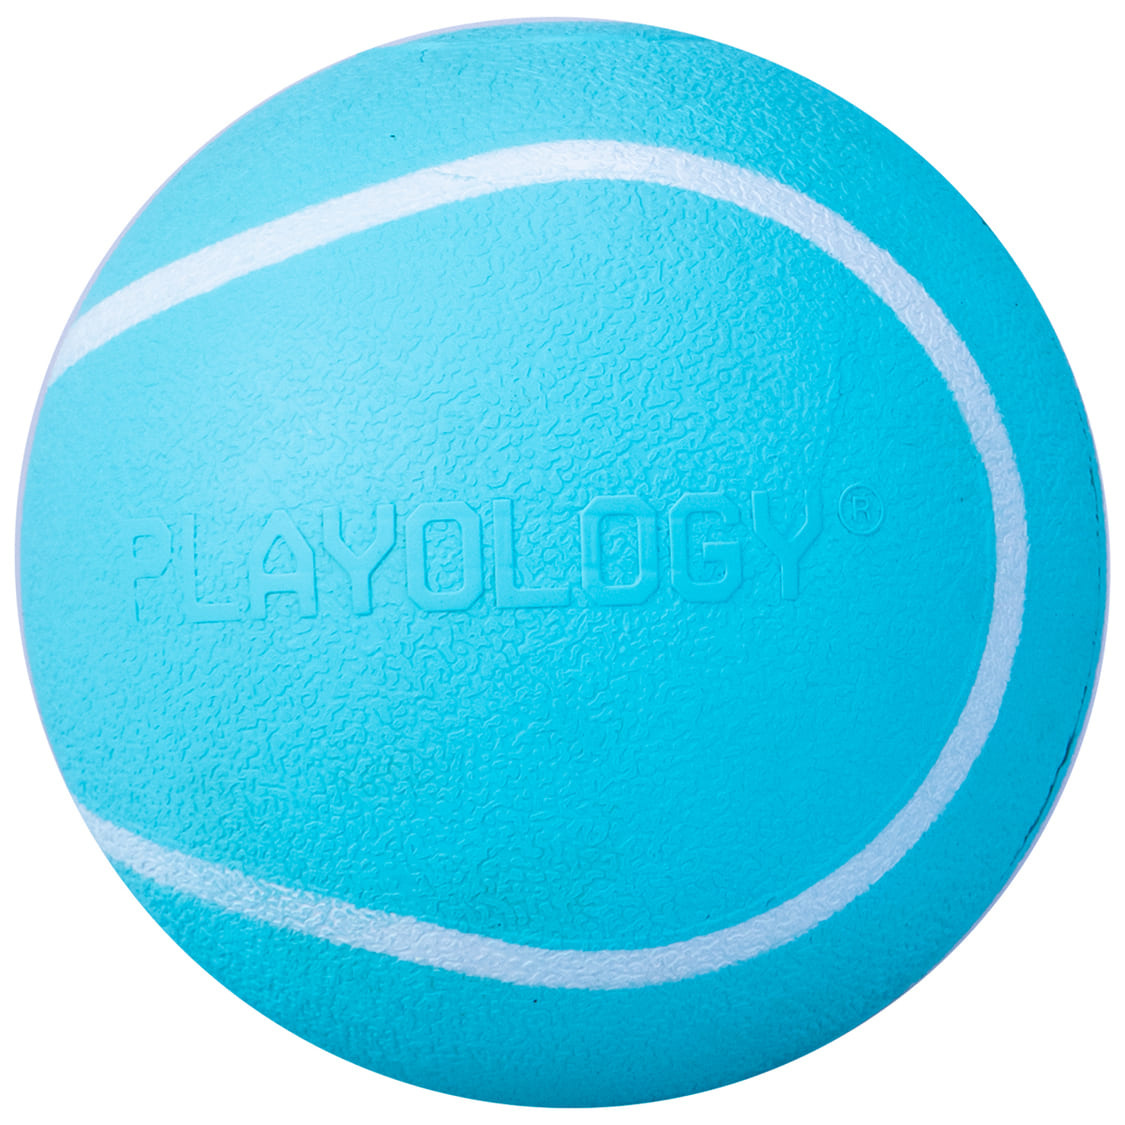 Playology Playology жевательный мяч Playology SQUEAKY CHEW BALL с пищалкой и с ароматом арахиса, цвет голубой (6 см) rogz мяч с пищалкой squeekz красный squeekz ball 0 059 кг